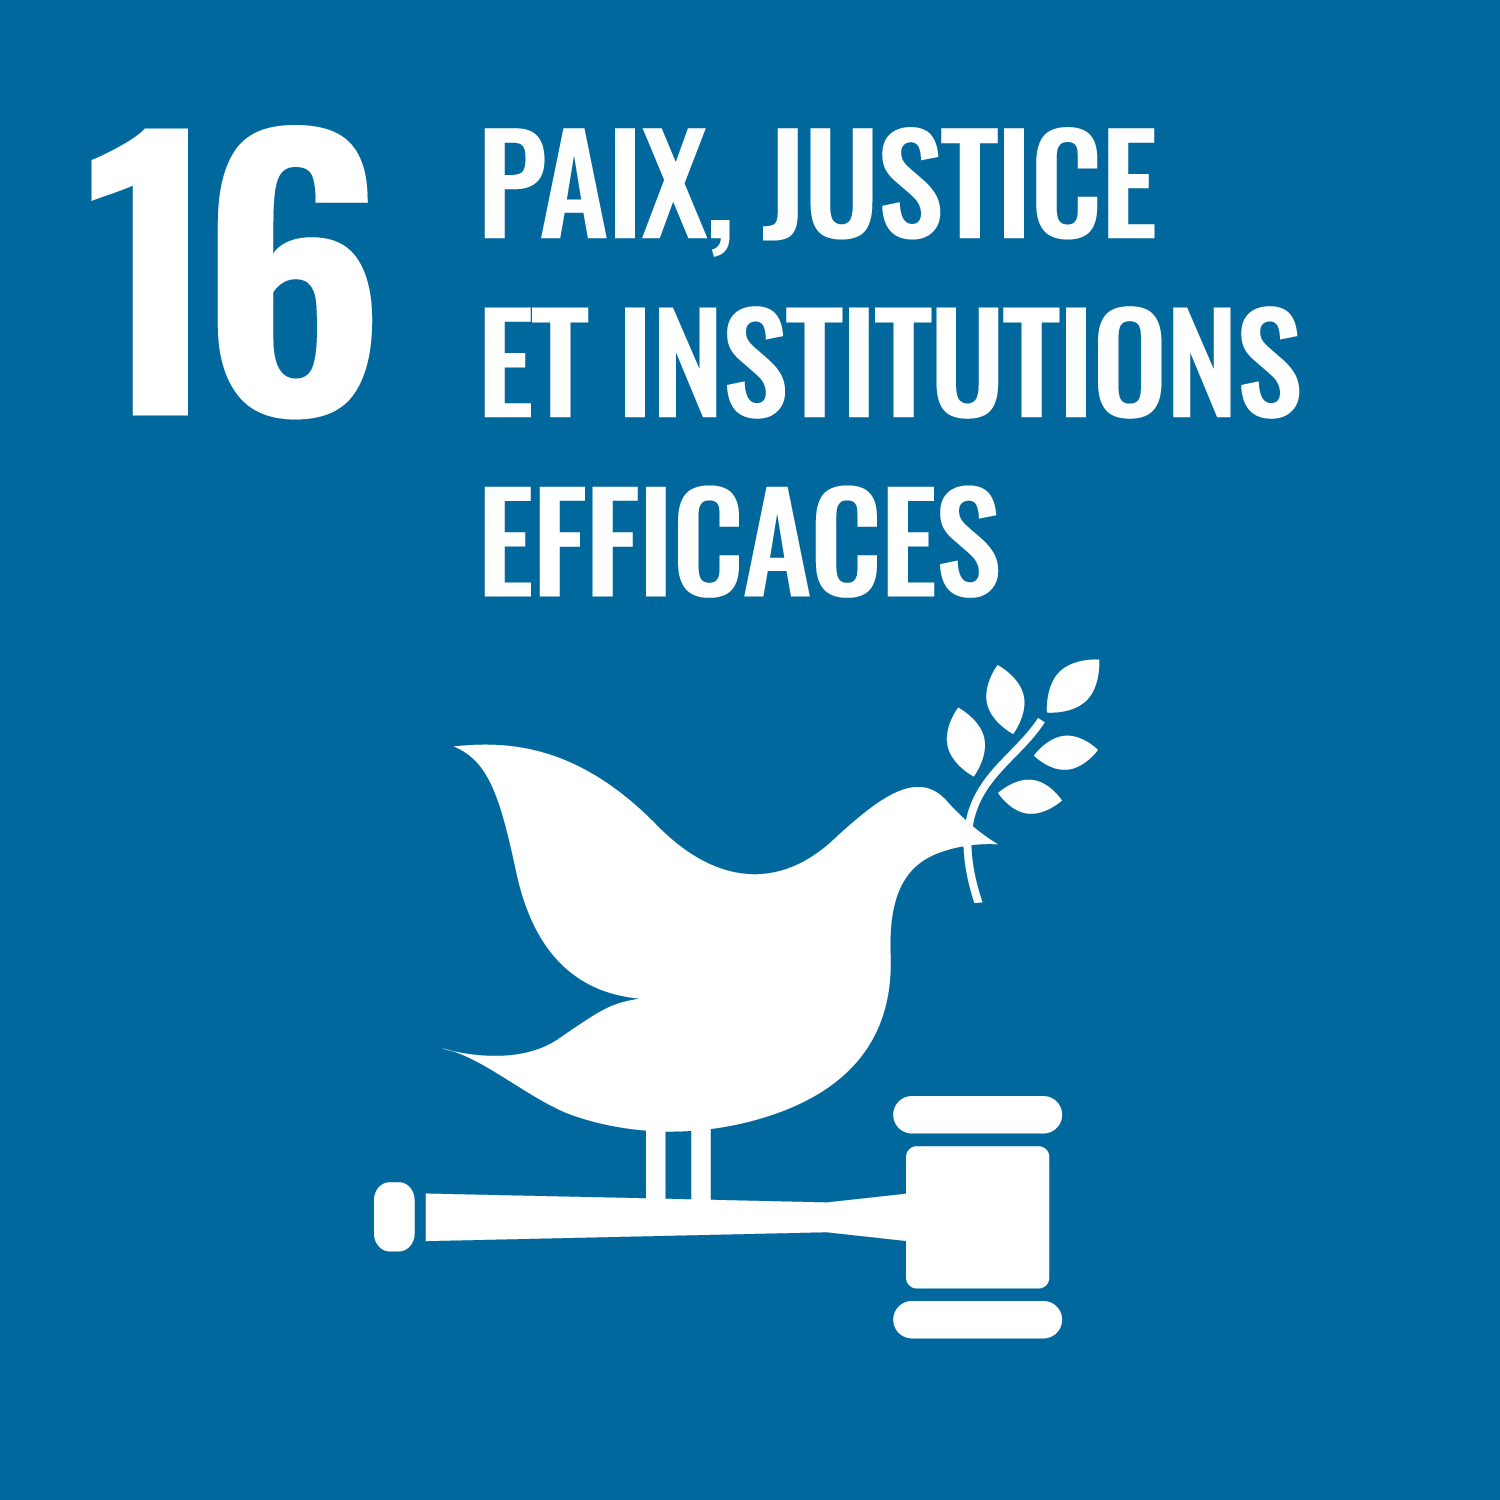 Objectif 16: Paix, justice, et institutions efficaces